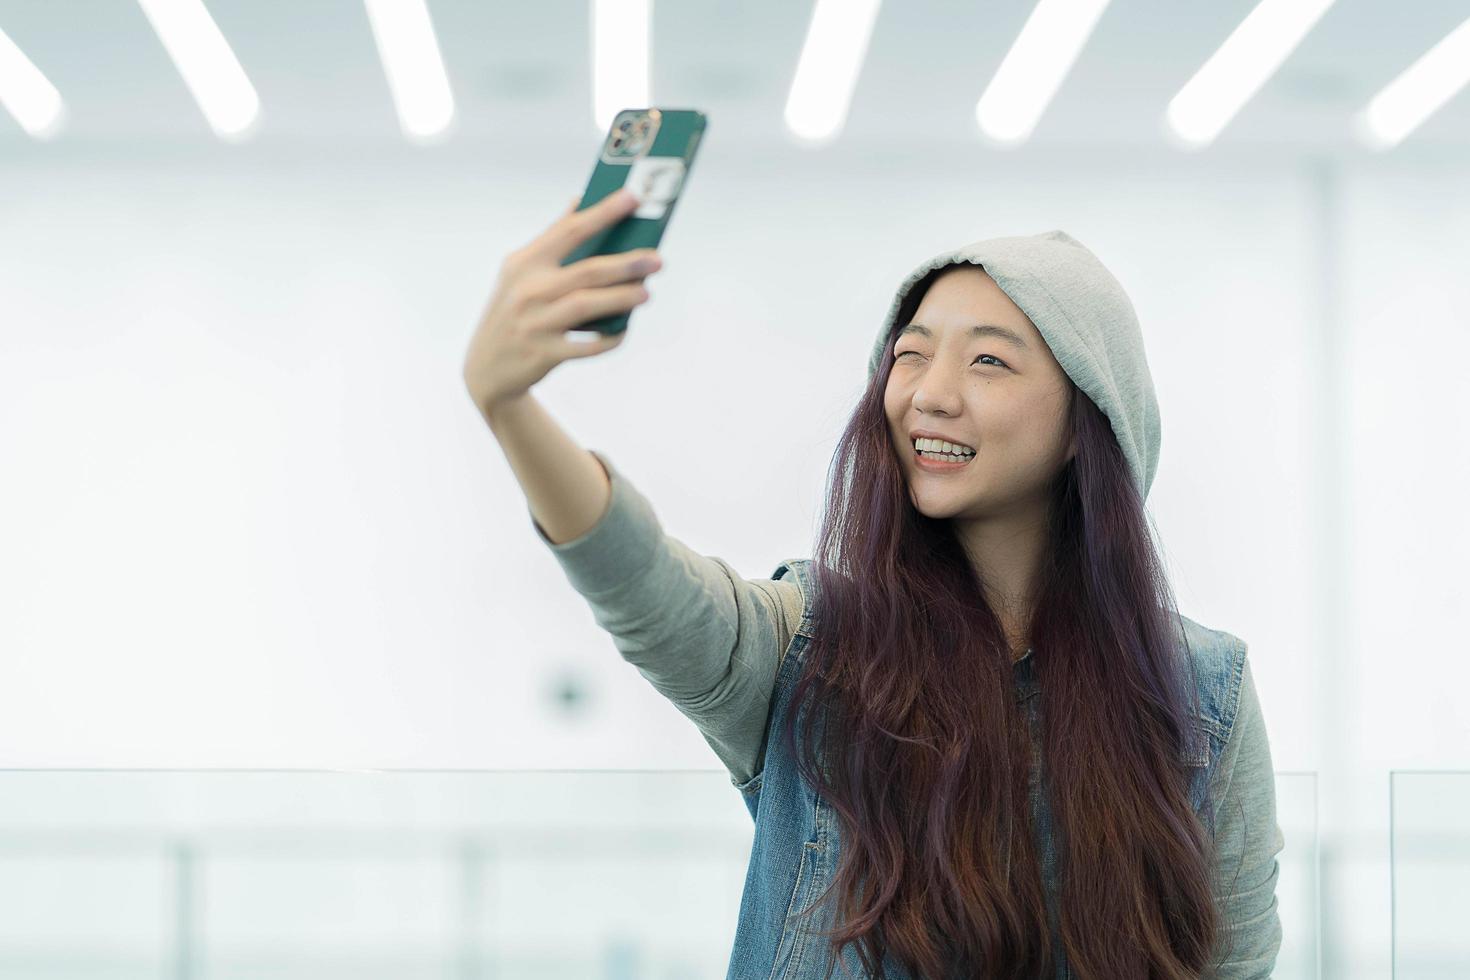 hermoso retrato joven mujer asiática tomando un selfie con un teléfono móvil inteligente, la chica está fotografiando con felicidad y sonrisa con diversión, concepto de estilo de vida. foto